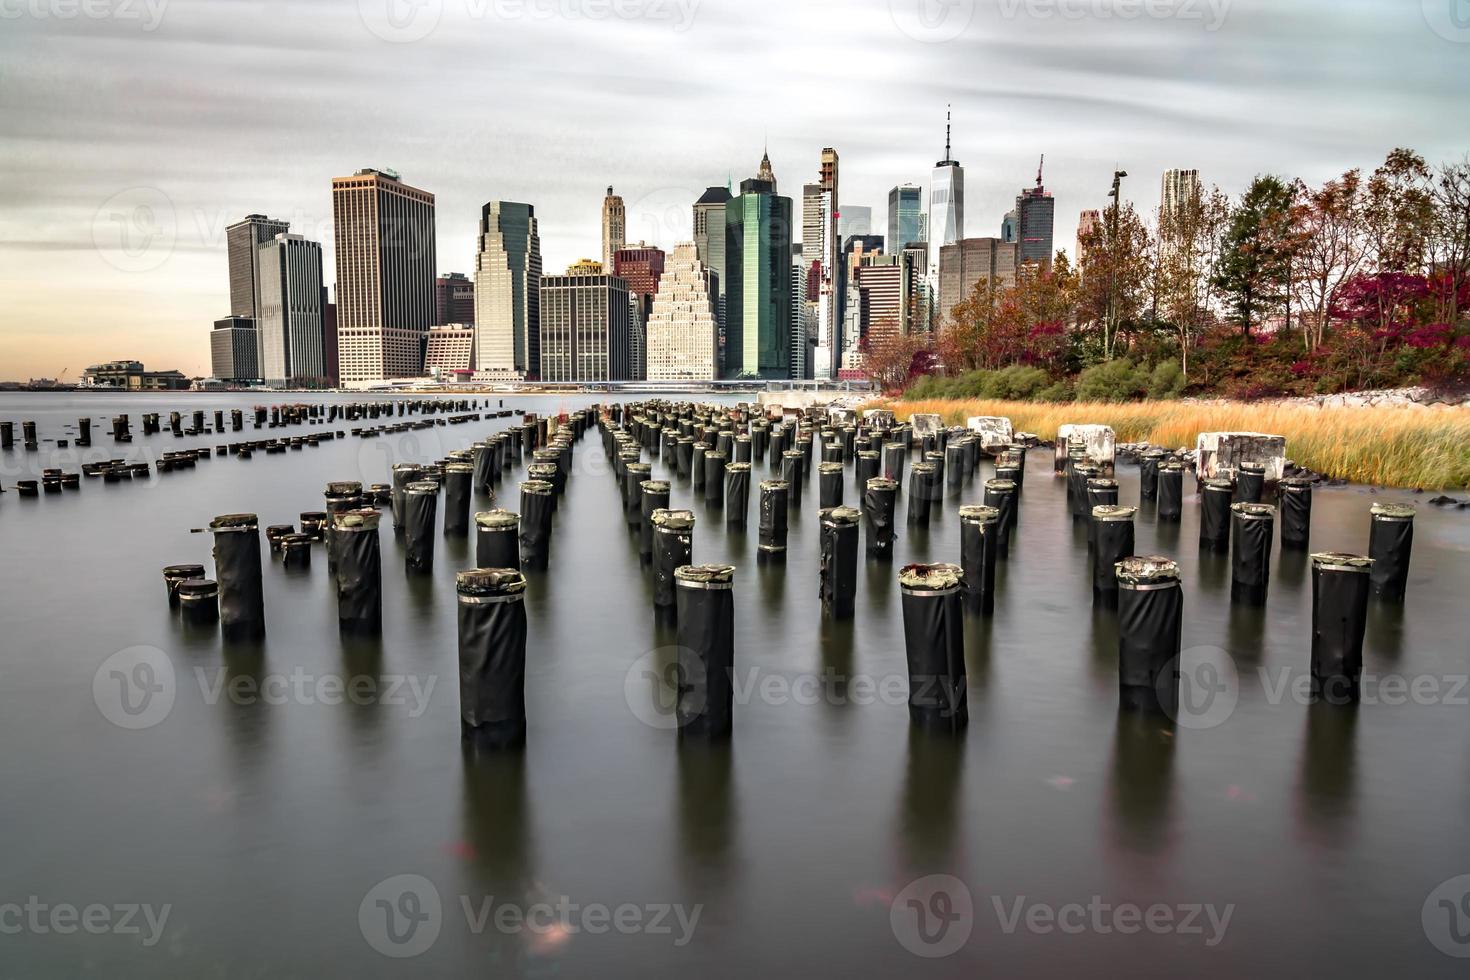 Skyline der Innenstadt von New York City, Manhattan foto